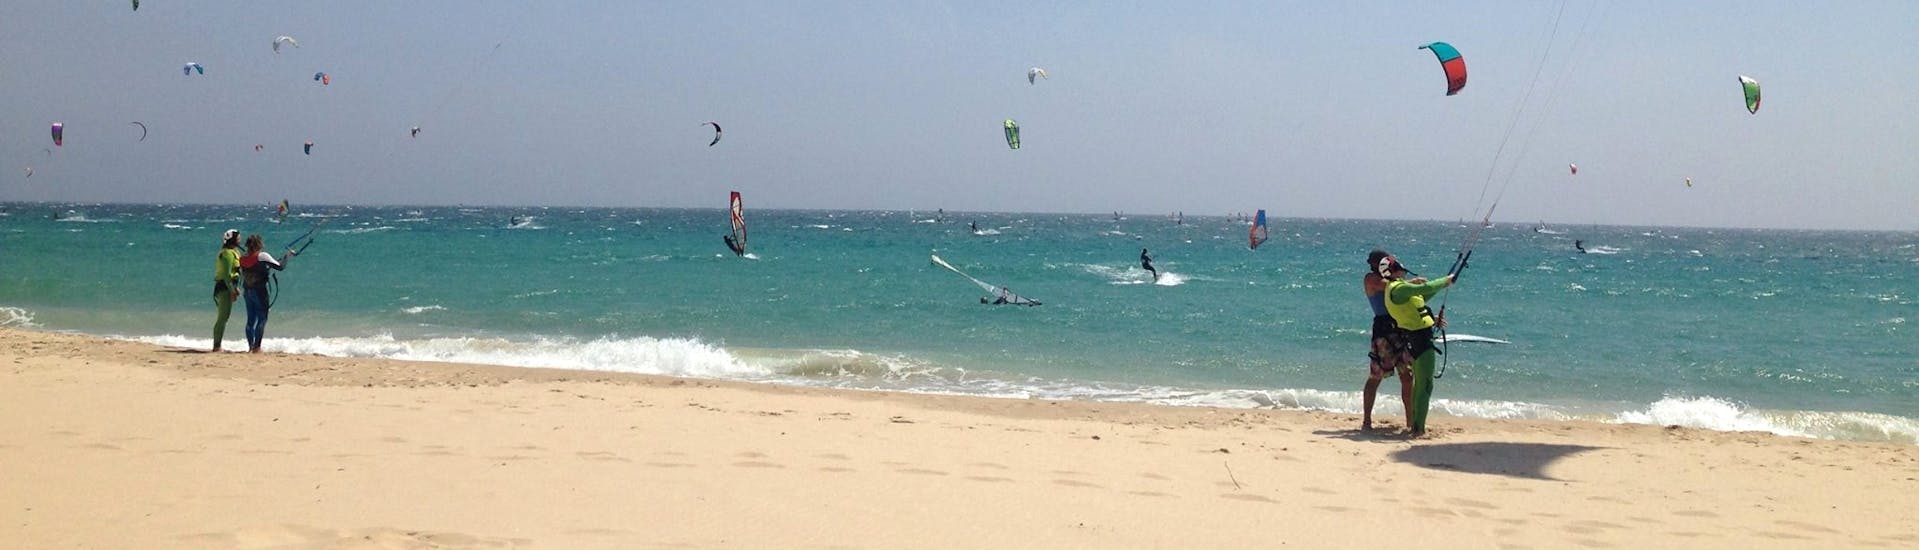 Cours privé de kitesurf à Tarifa (dès 12 ans).